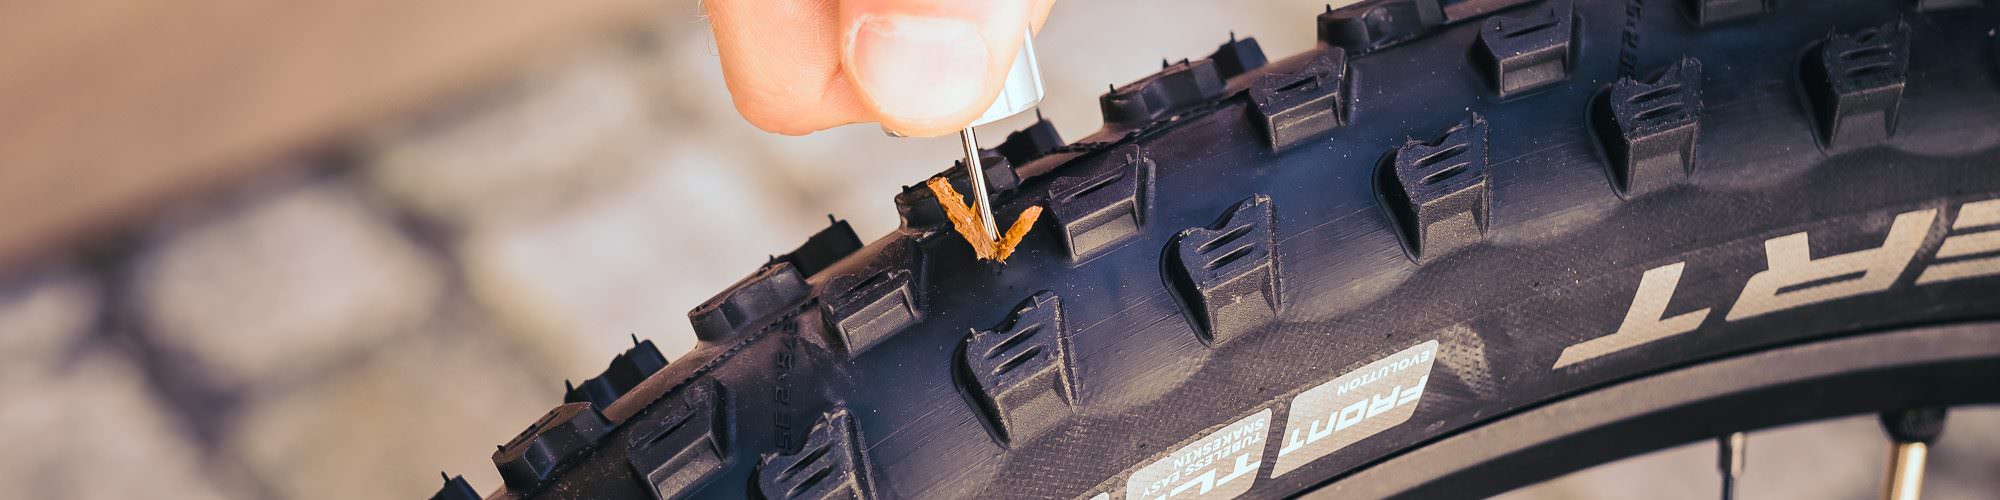 Mini Review: GRAND PITSTOP Tubeless Tyre Puncture Repair Kit.. 